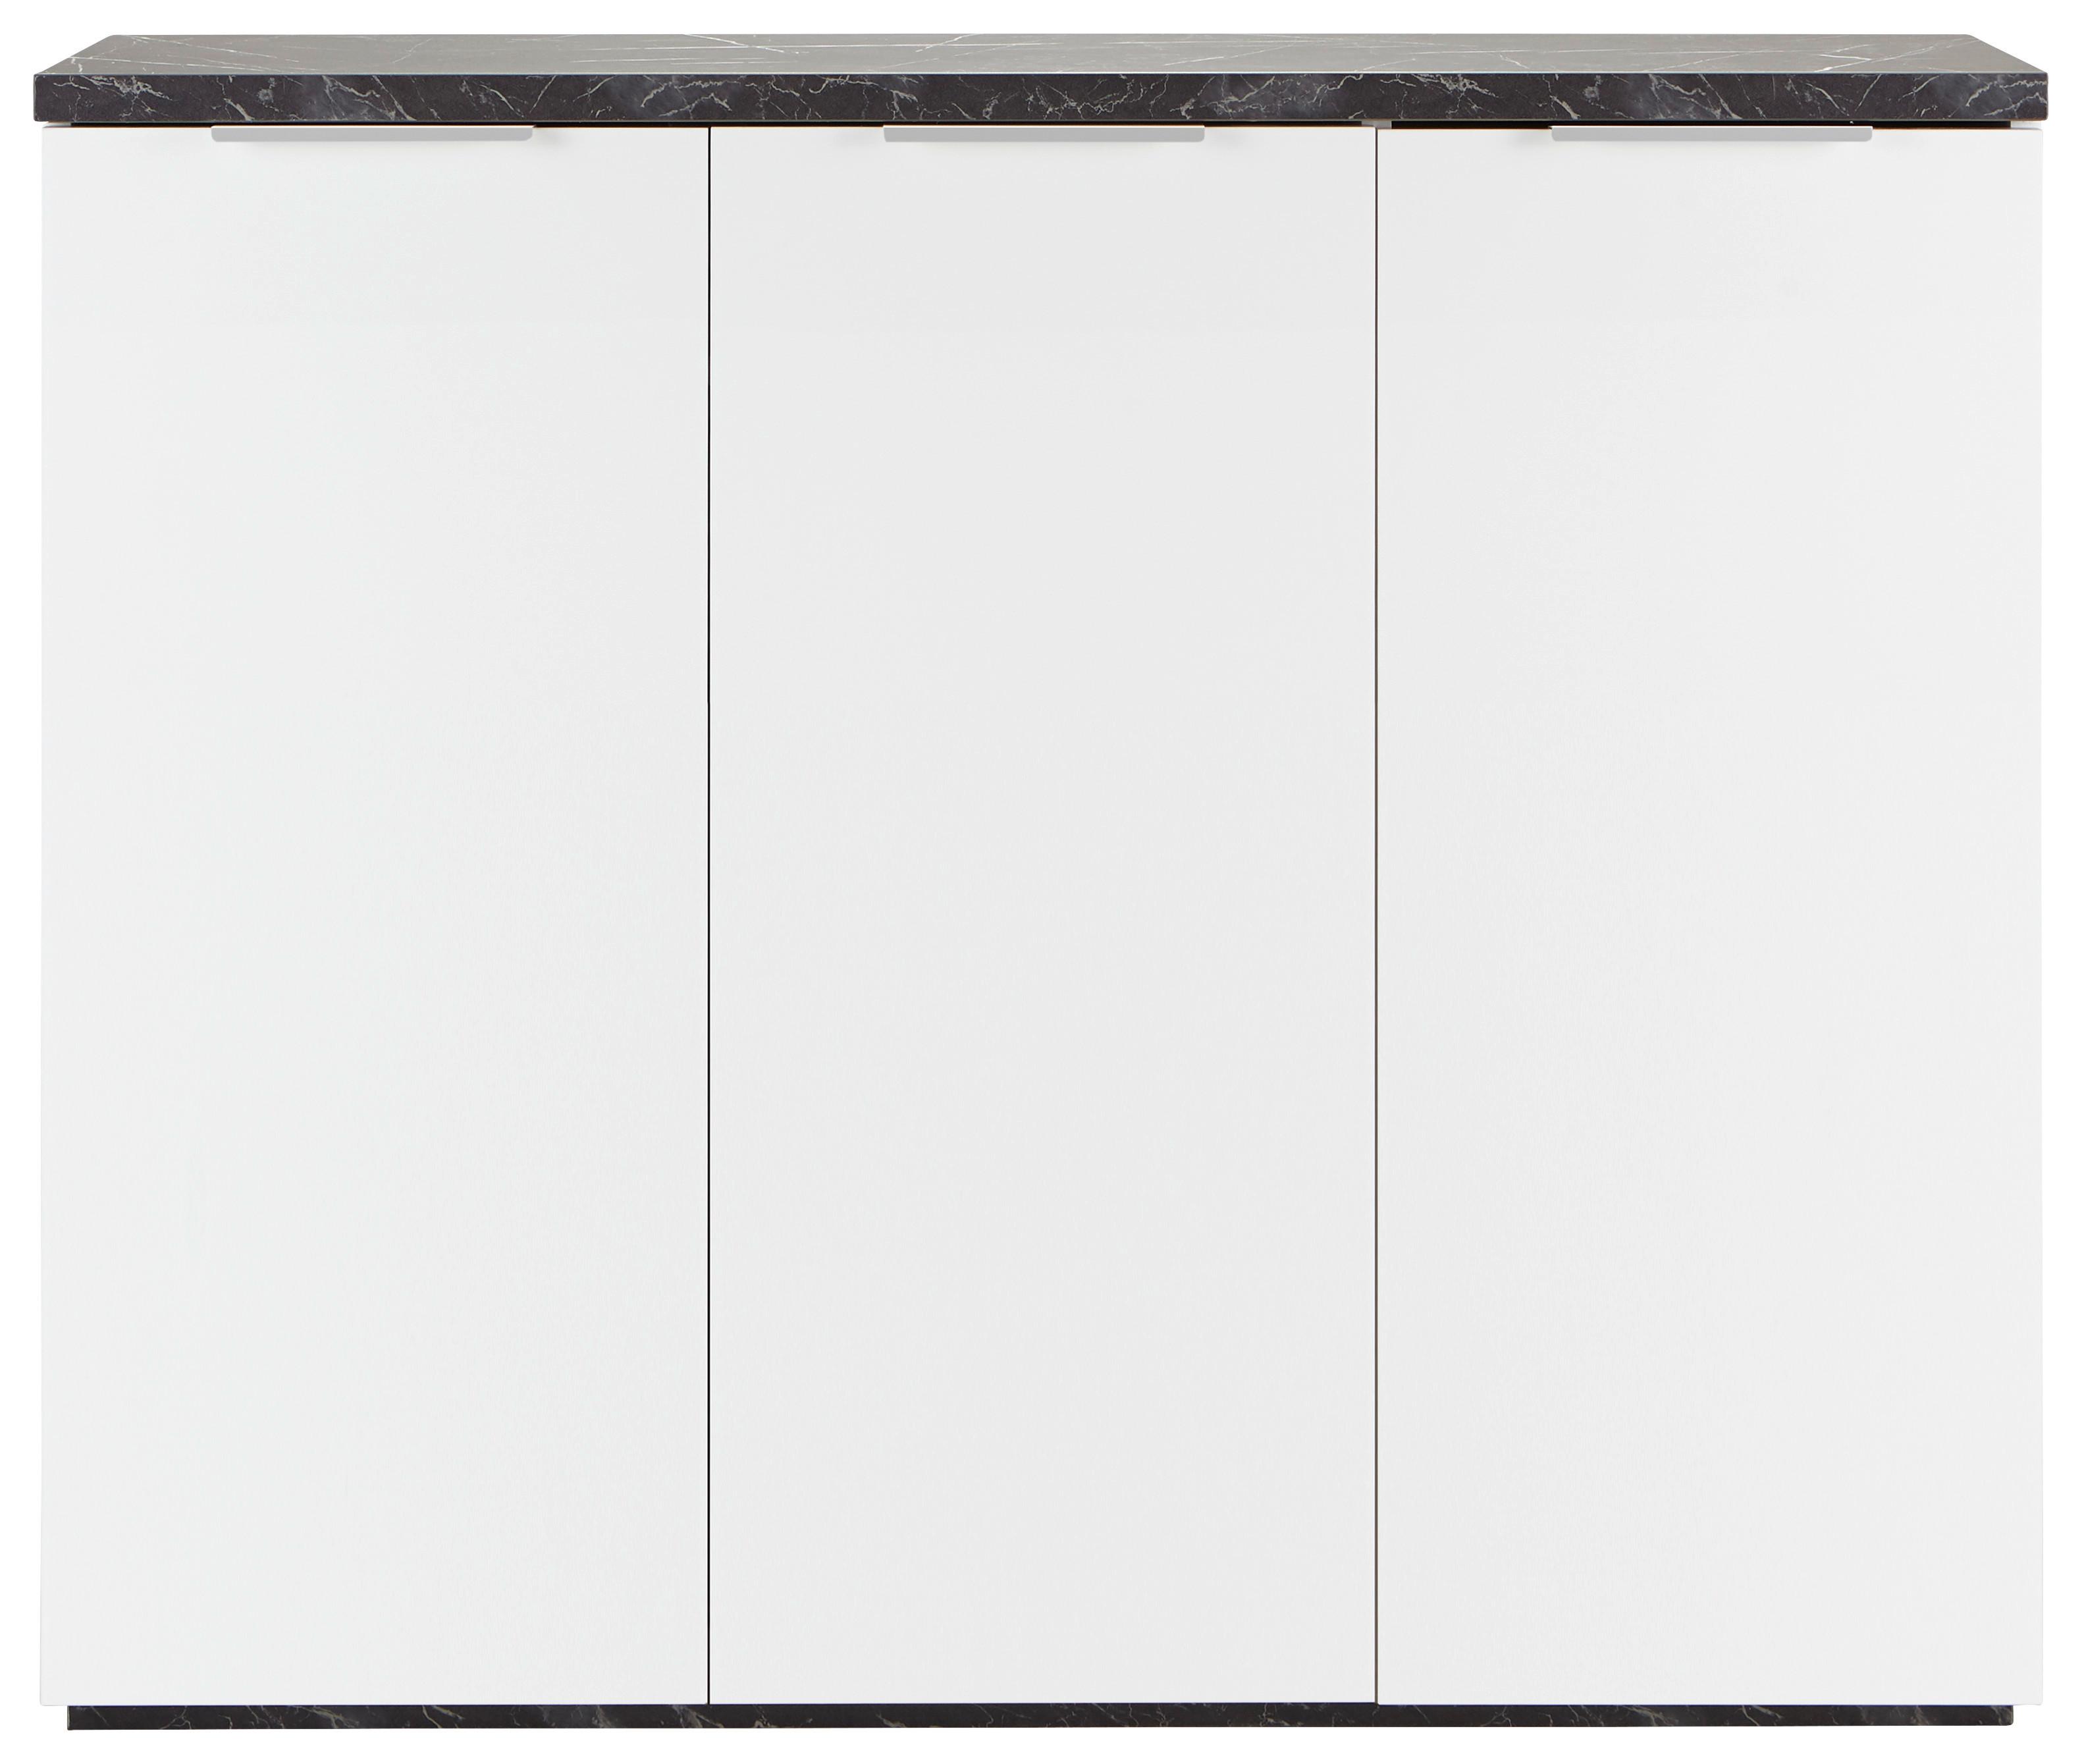 Schuhschrank in Weiß - Weiß, MODERN, Holzwerkstoff/Metall (120/102/35cm) - Premium Living